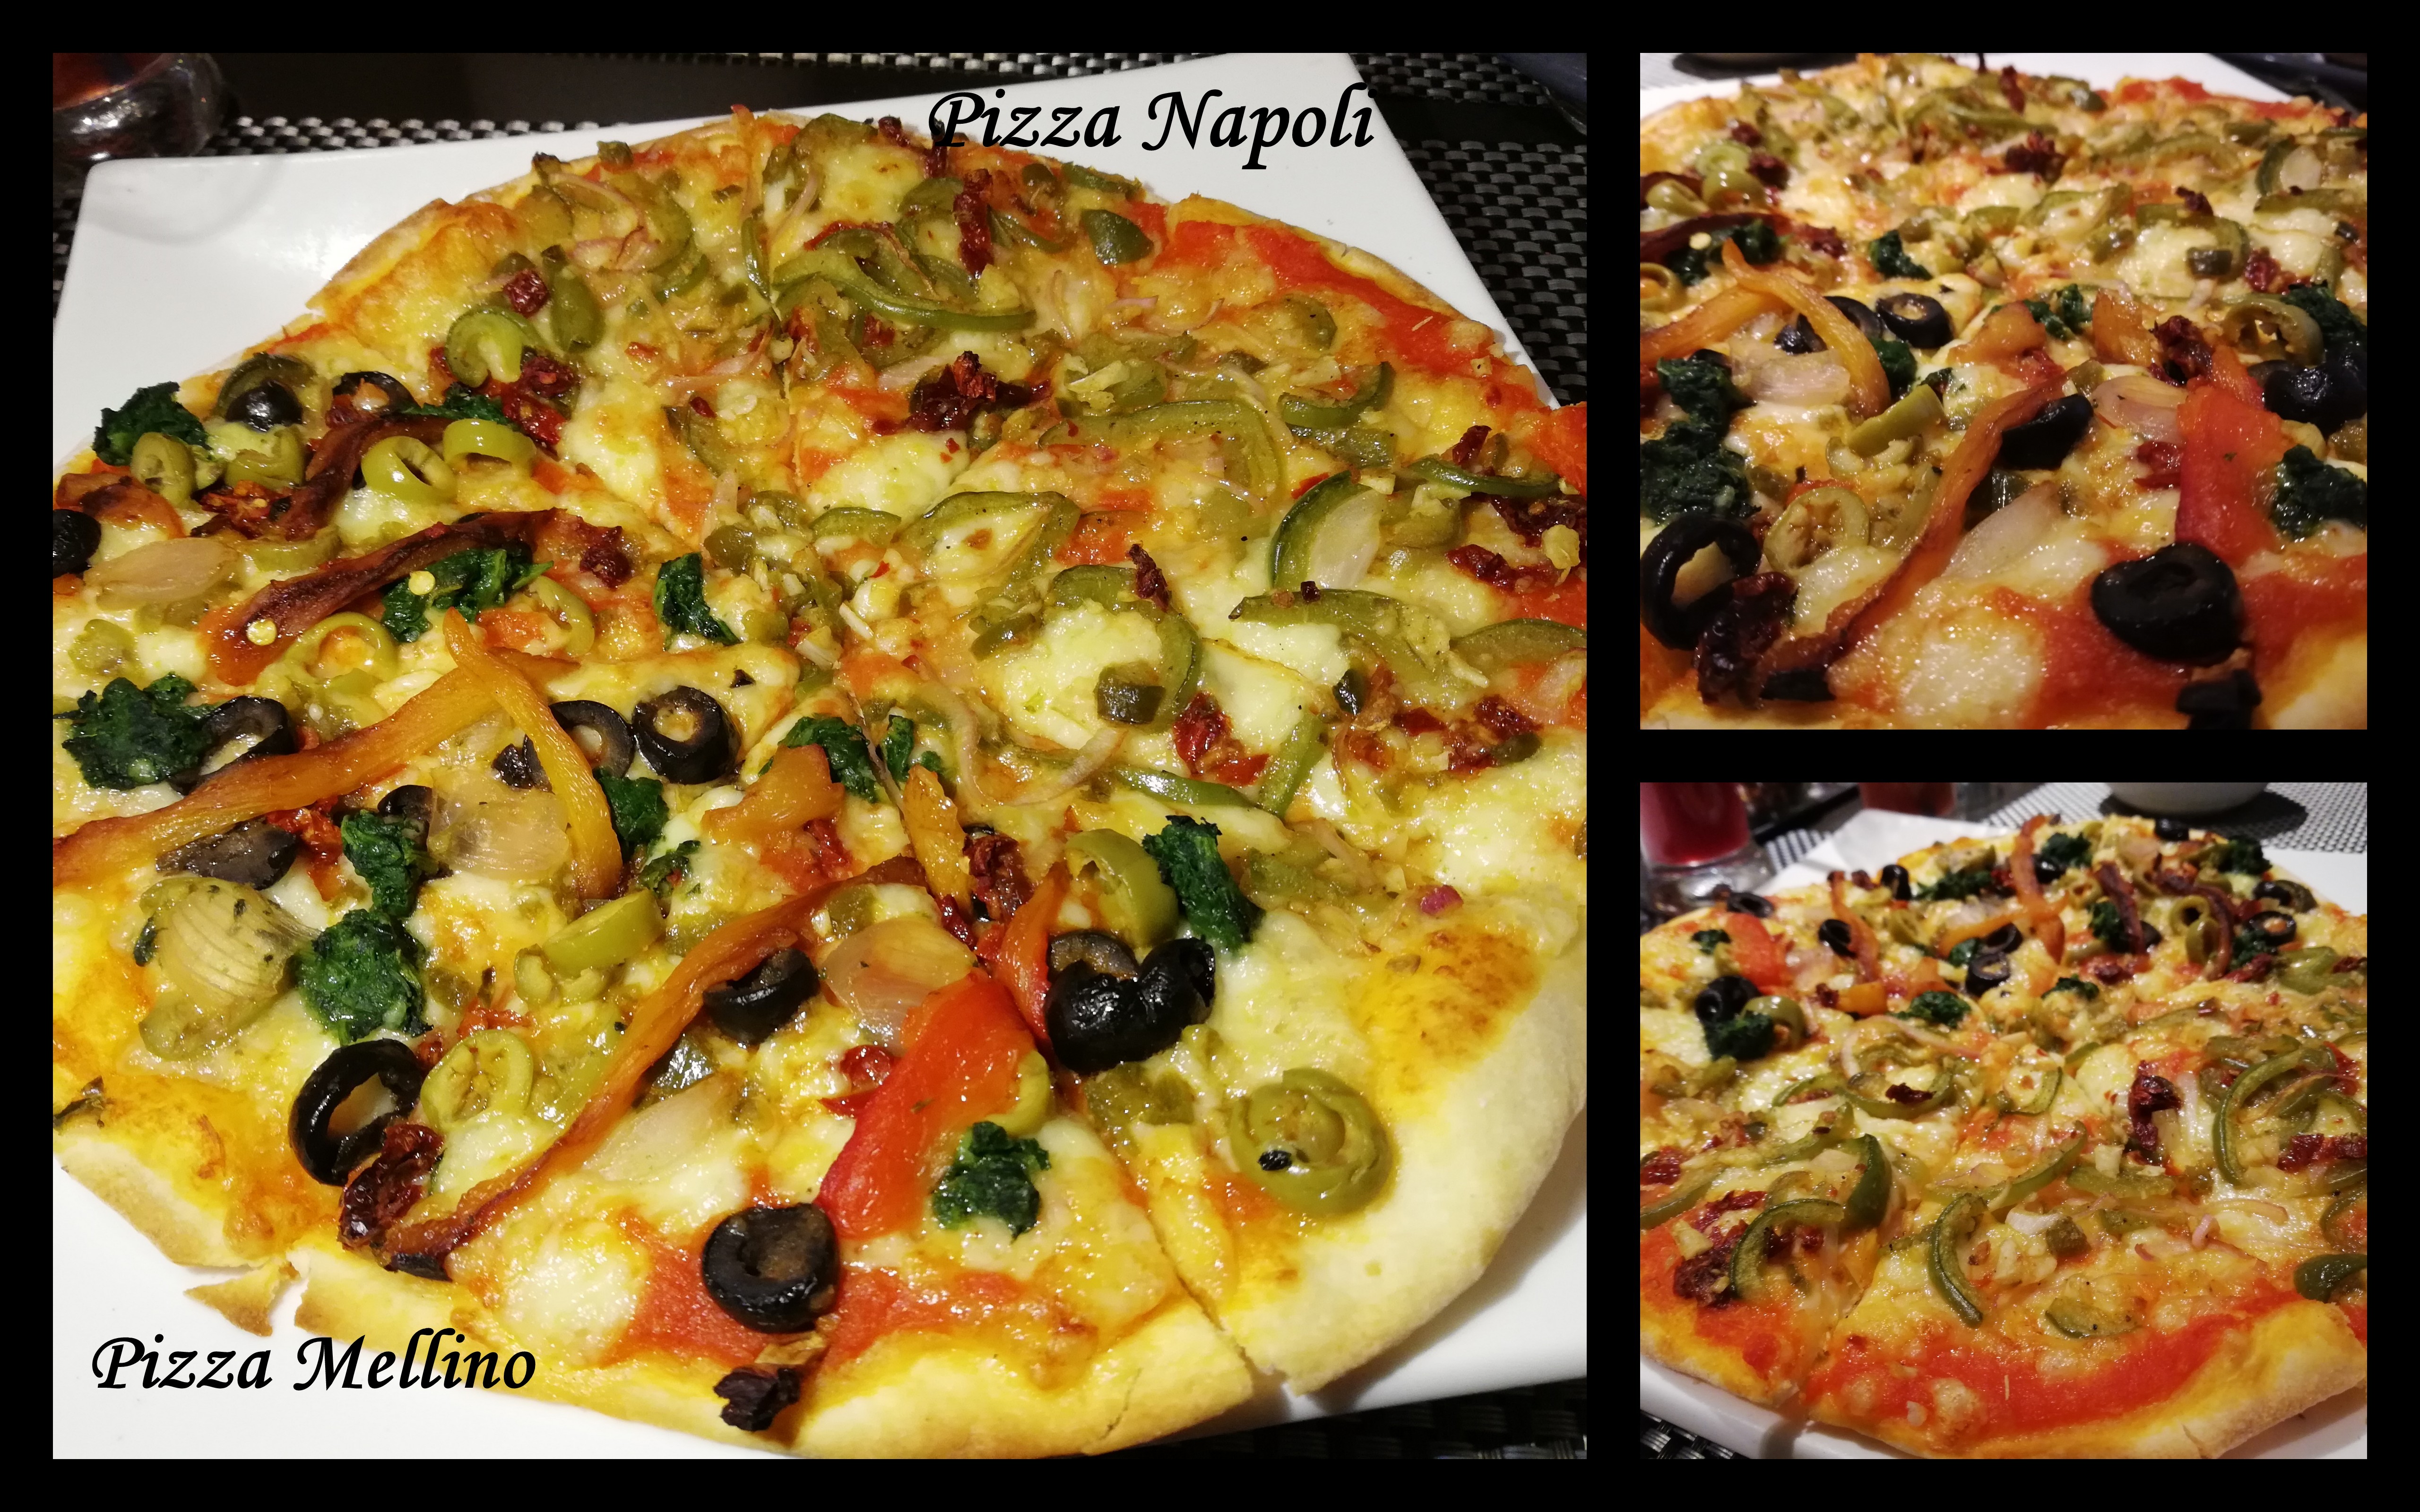 Pizza Napoli, Pizza Mellino - Little Italy